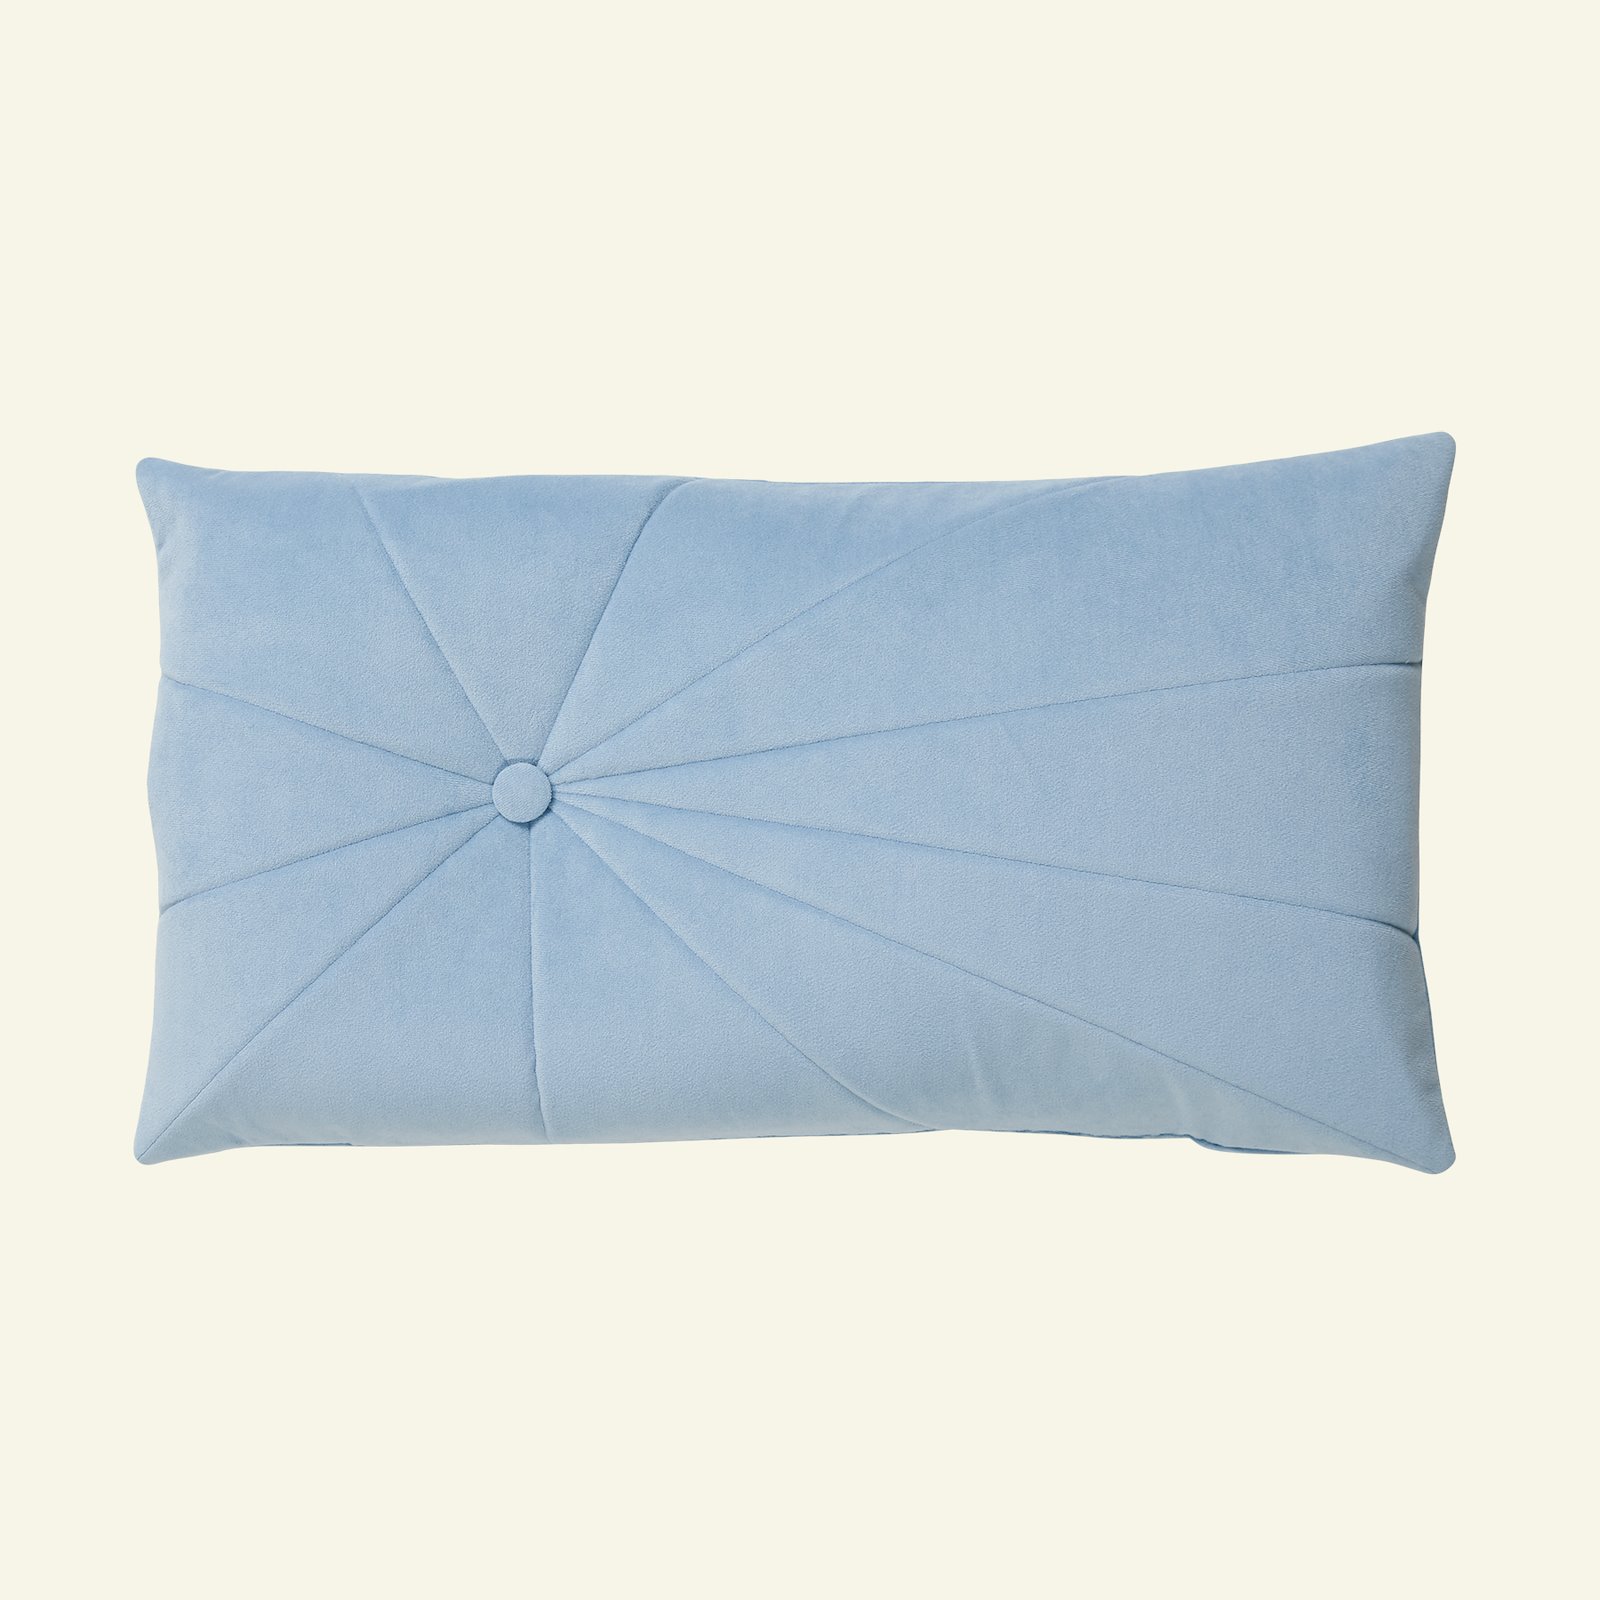 Upholstery velvet light bright blue p90320_826255_43516_sskit